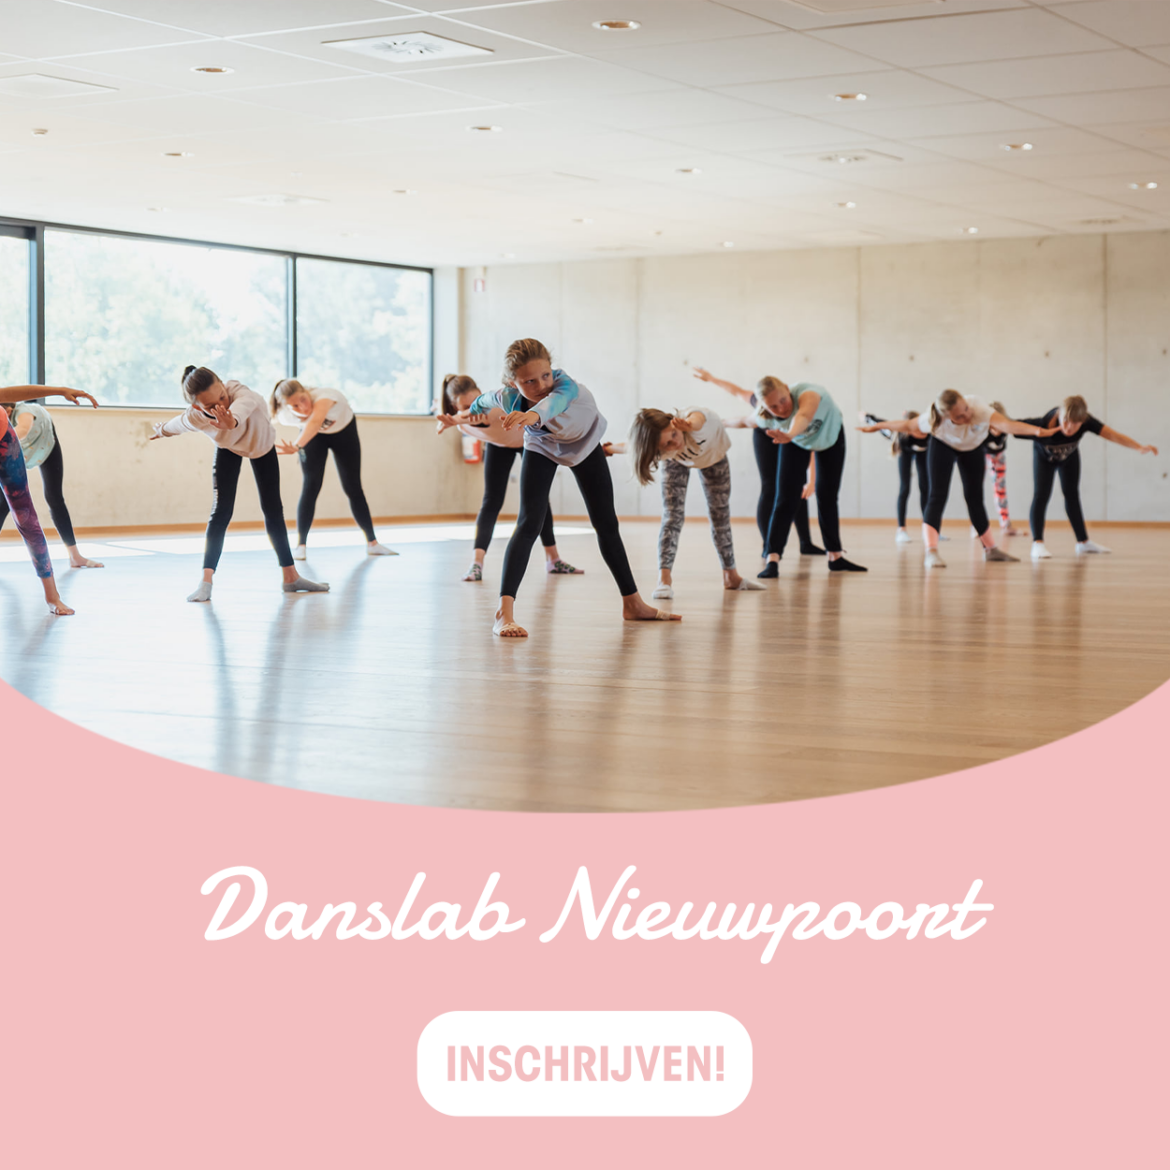 danslab-Nieuwpoort.png